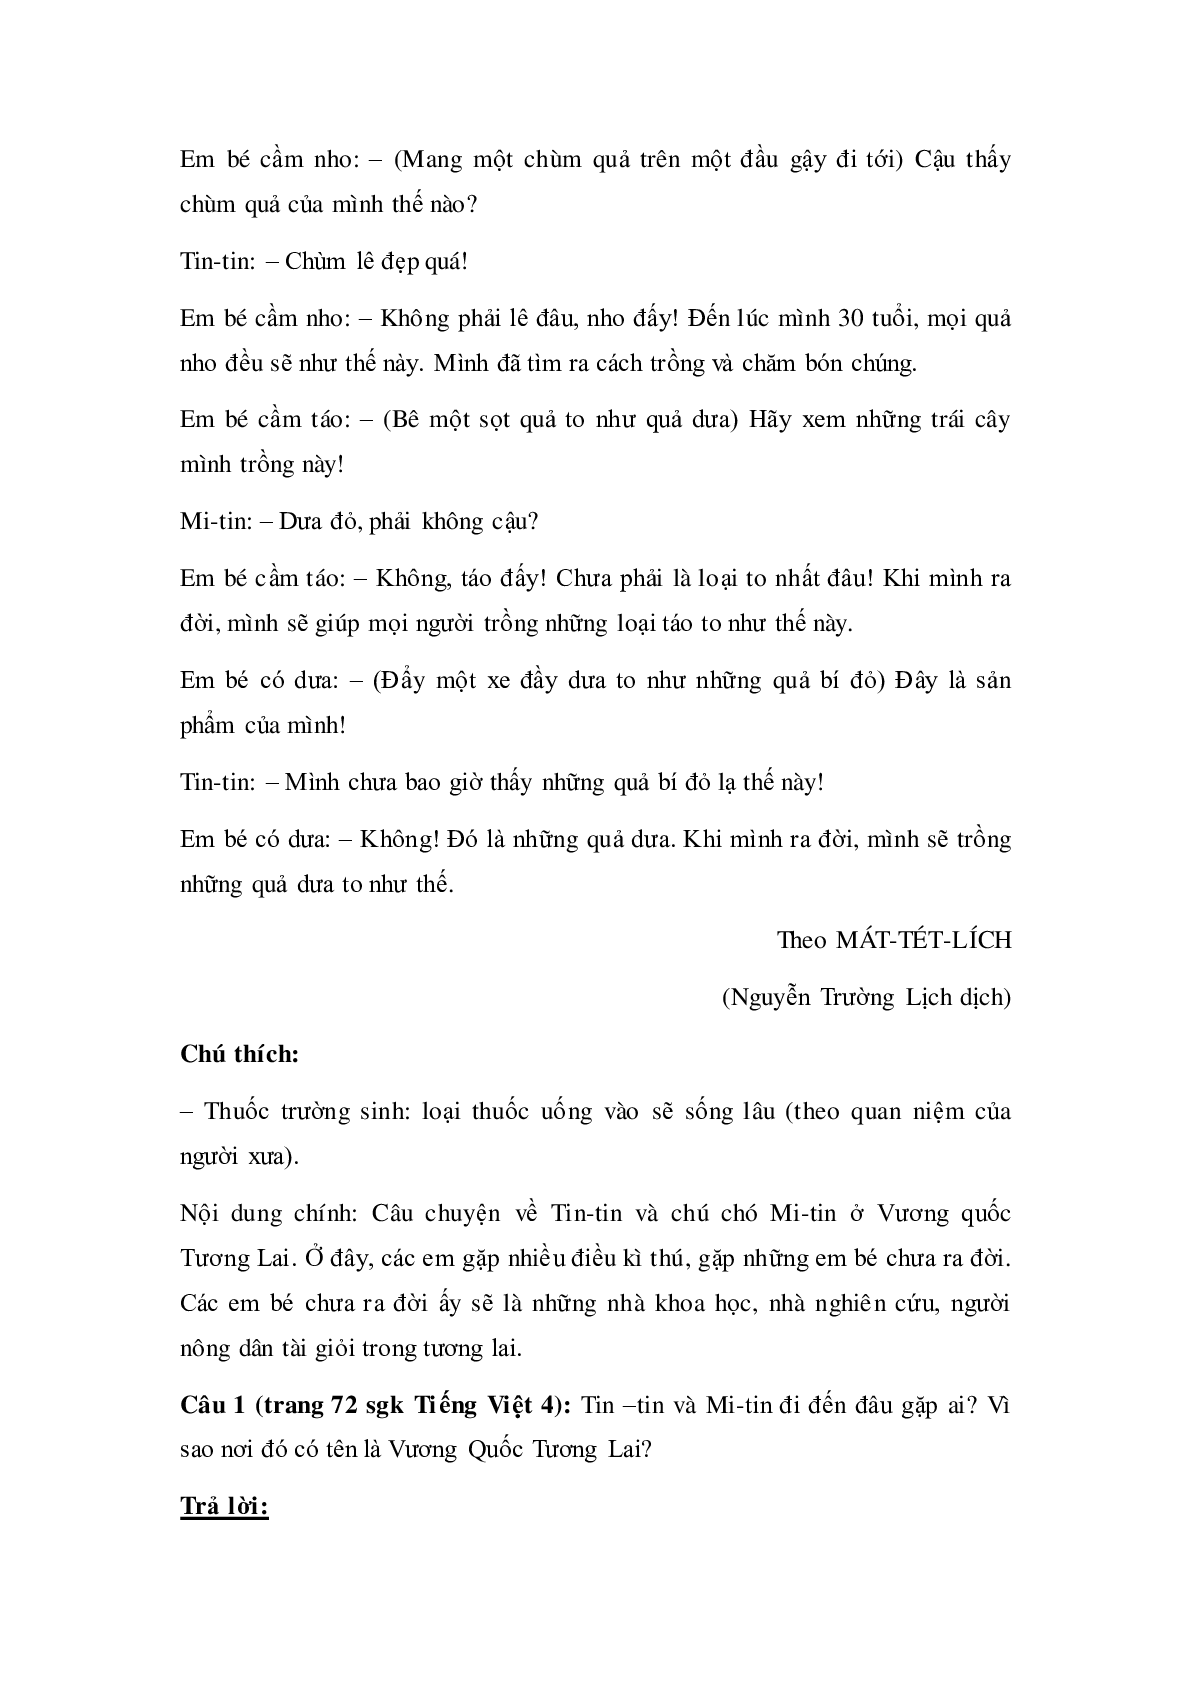 Soạn Tiếng Việt lớp 4: Tập đọc: Ở Vương quốc Tương Lai mới nhất (trang 2)